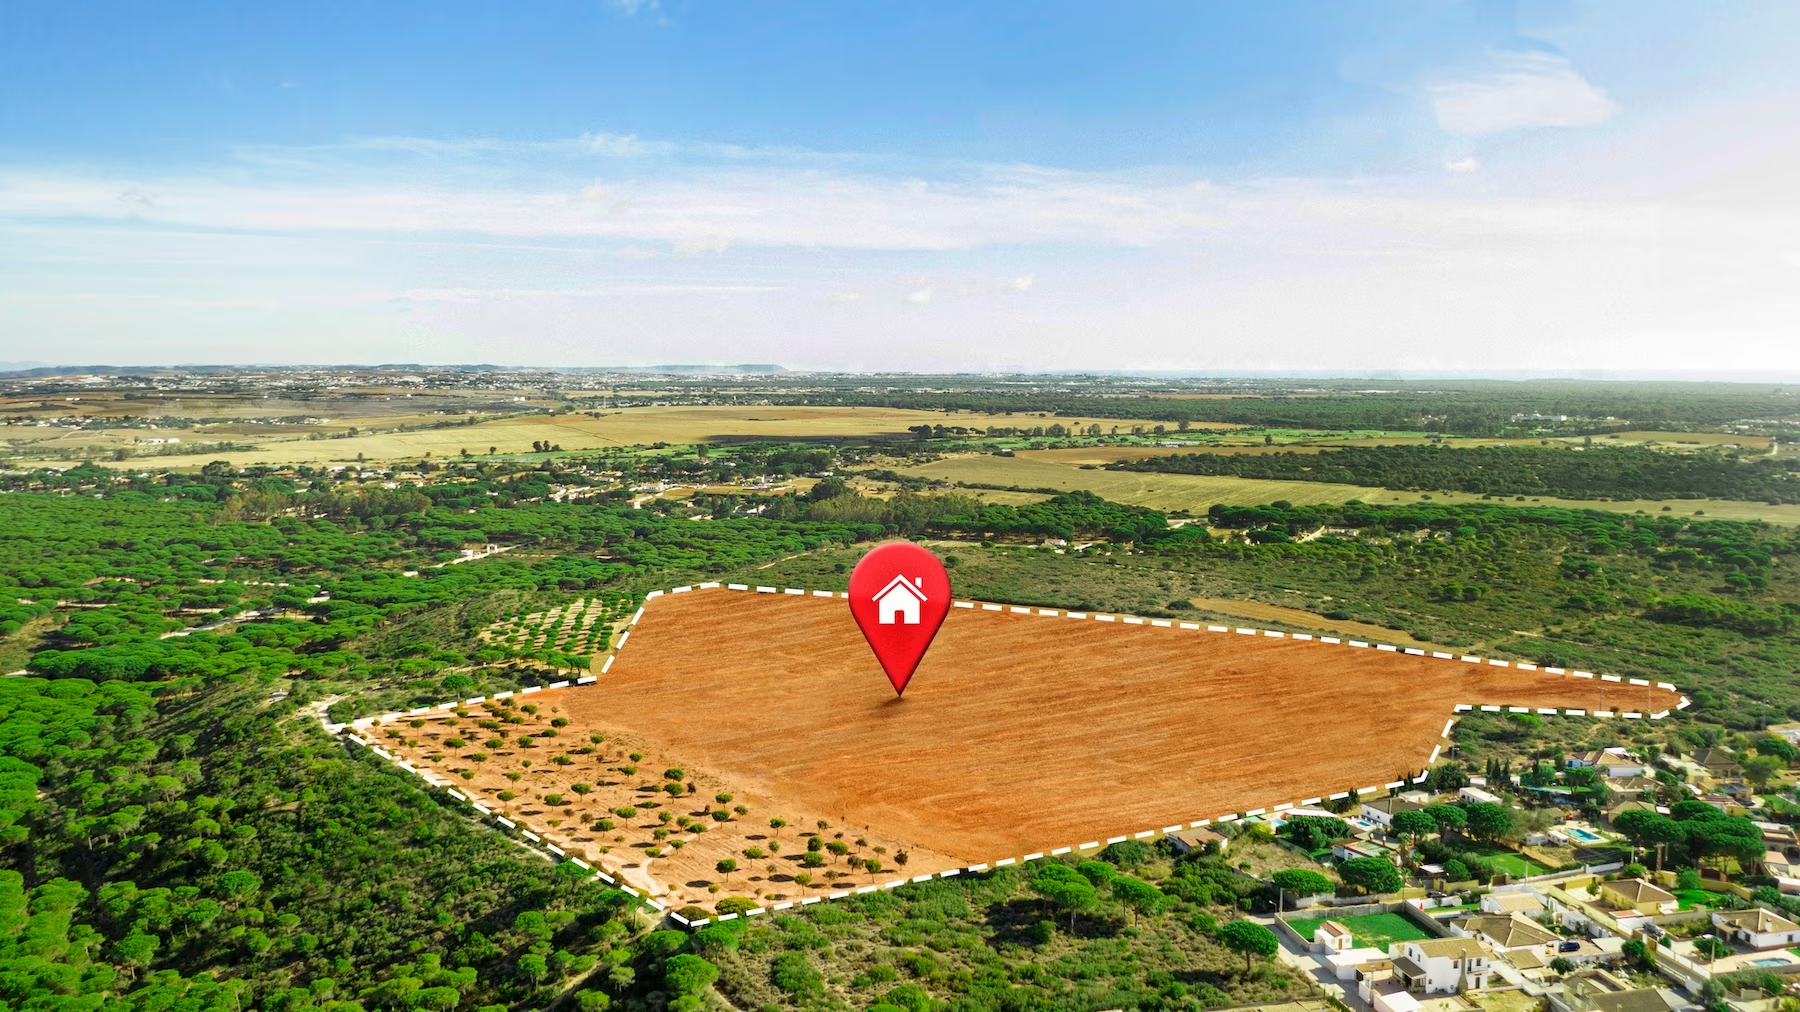 Une vue aérienne d'un champ avec une épingle rouge pointant vers une maison.